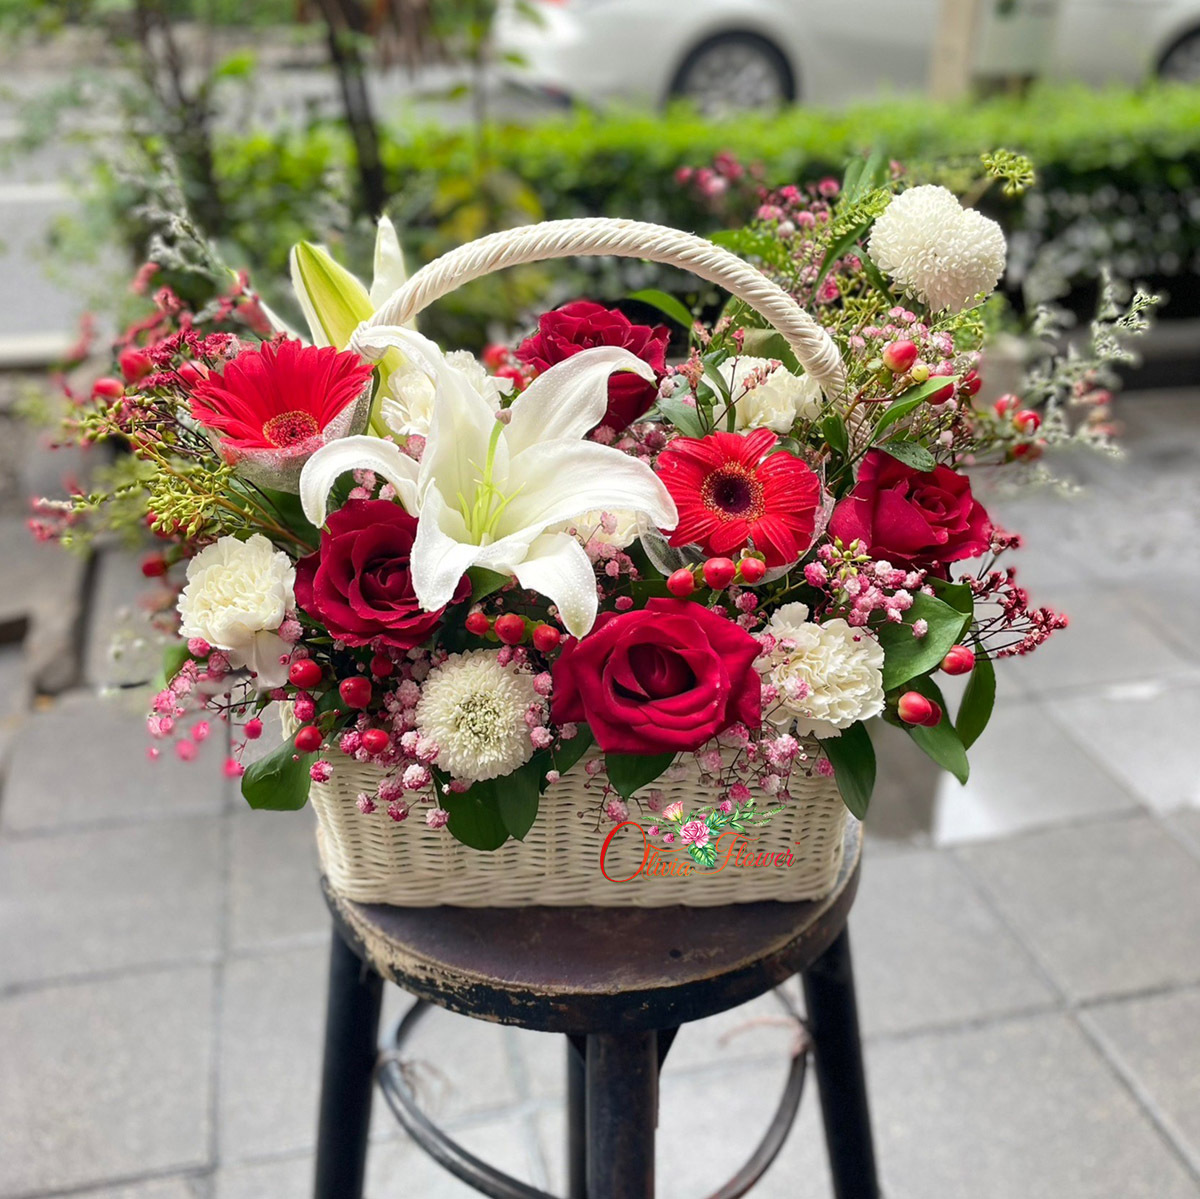 กระเช้าดอกไม้สด ประกอบด้วย ดอกกุหลาบสีแดง 4 ดอก ดอกปิงปอง 2 ดอก ดอกคาร์เนชั่นสีขาว ดอกมิกกี้เมาส์ ดอกลิลลี่ 2 ดอก และดอกยิปซี